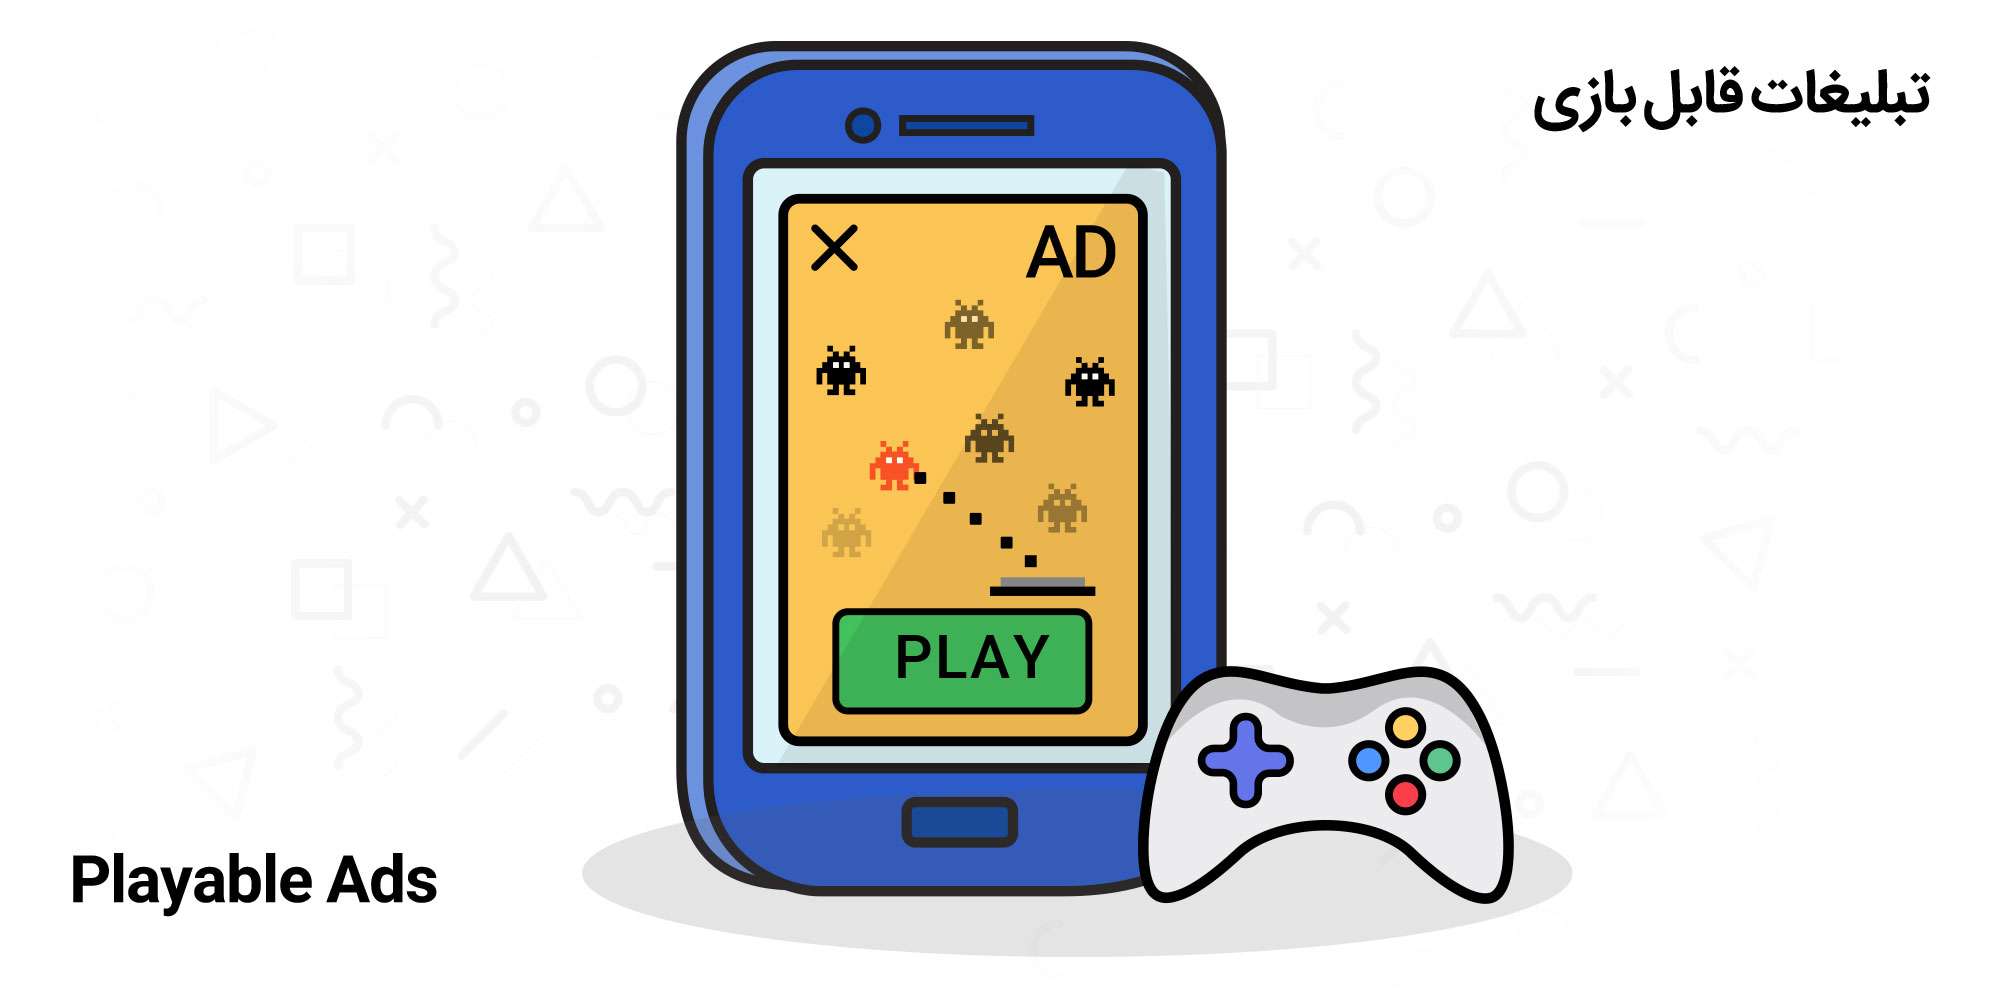 تبلیغات قابل بازی در گوشی موبایل به همراه یک دسته بازی